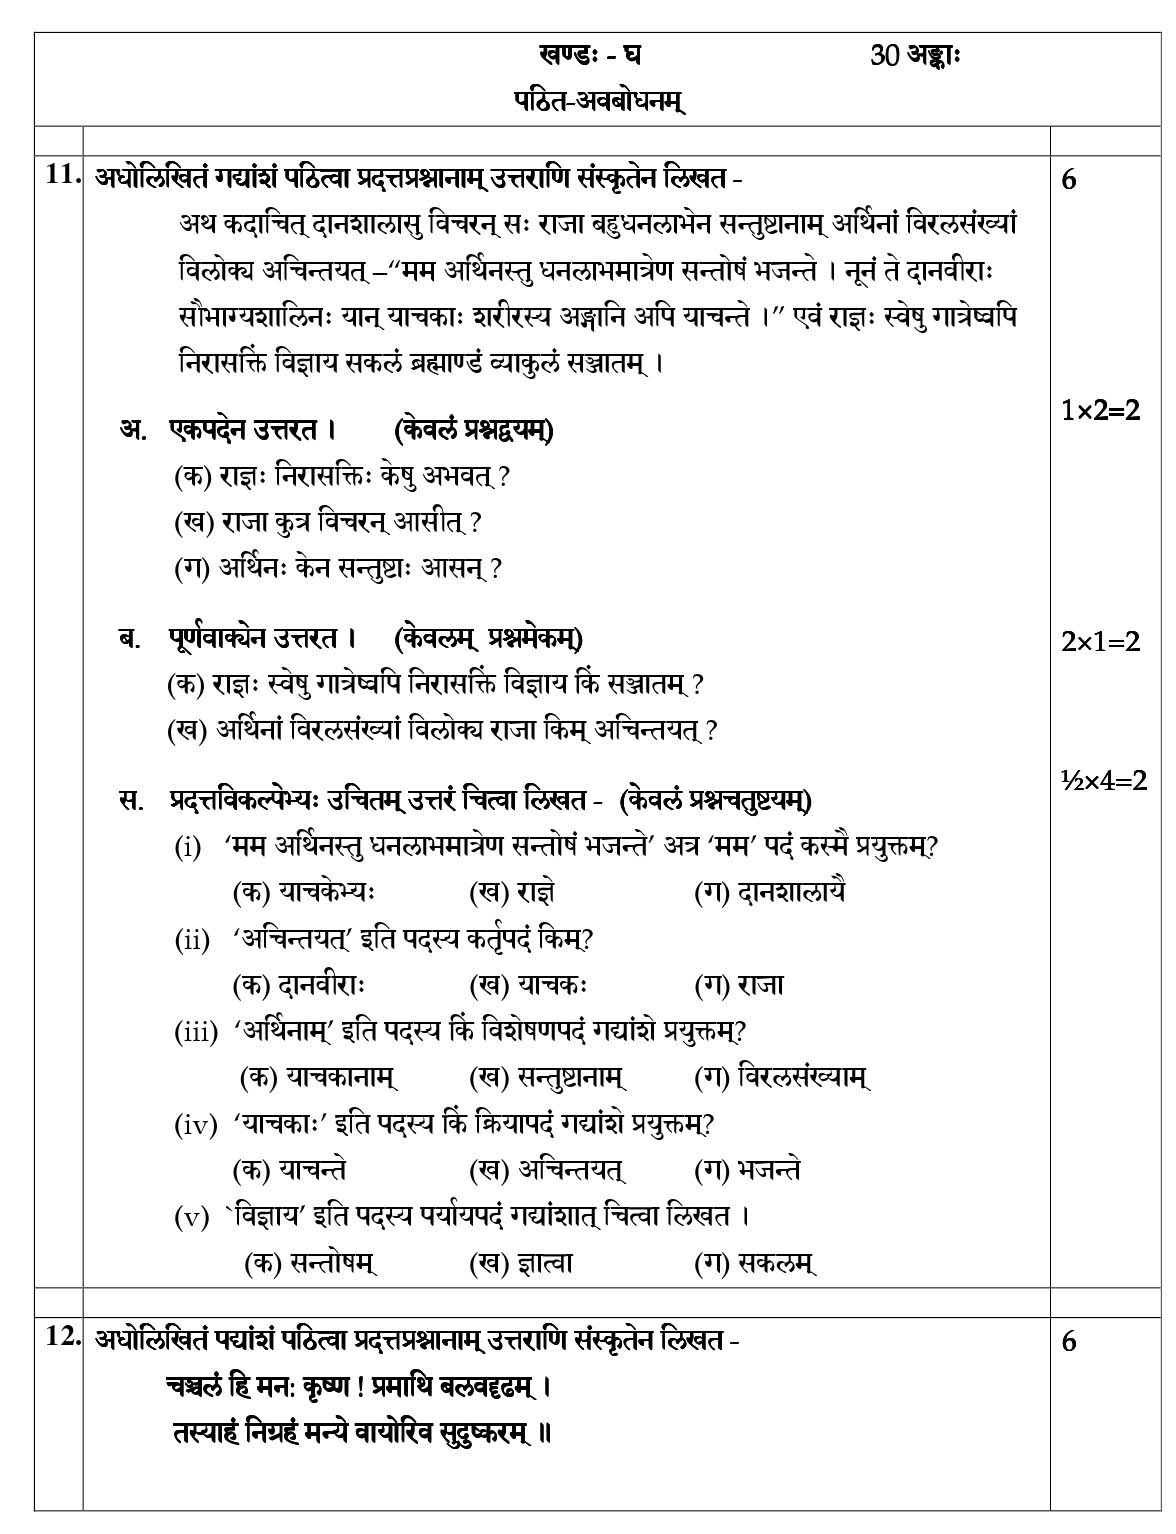 Sanskrit CBSE Class X Sample Question Paper 2018-19 - Image 7